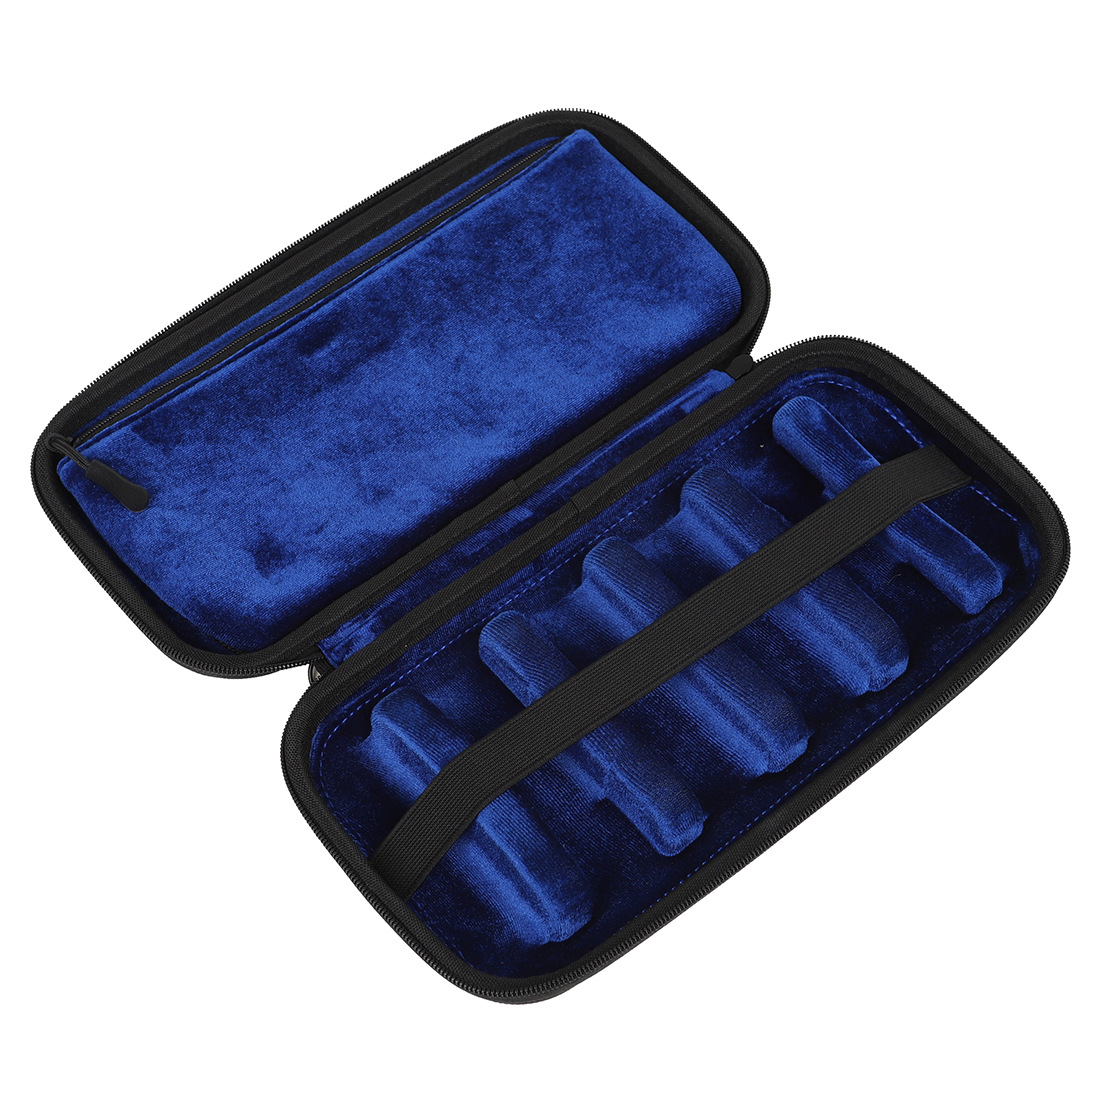 销厂家直销高档硬质笛头包便携式笛头收纳包内绒布袋笛头盒新